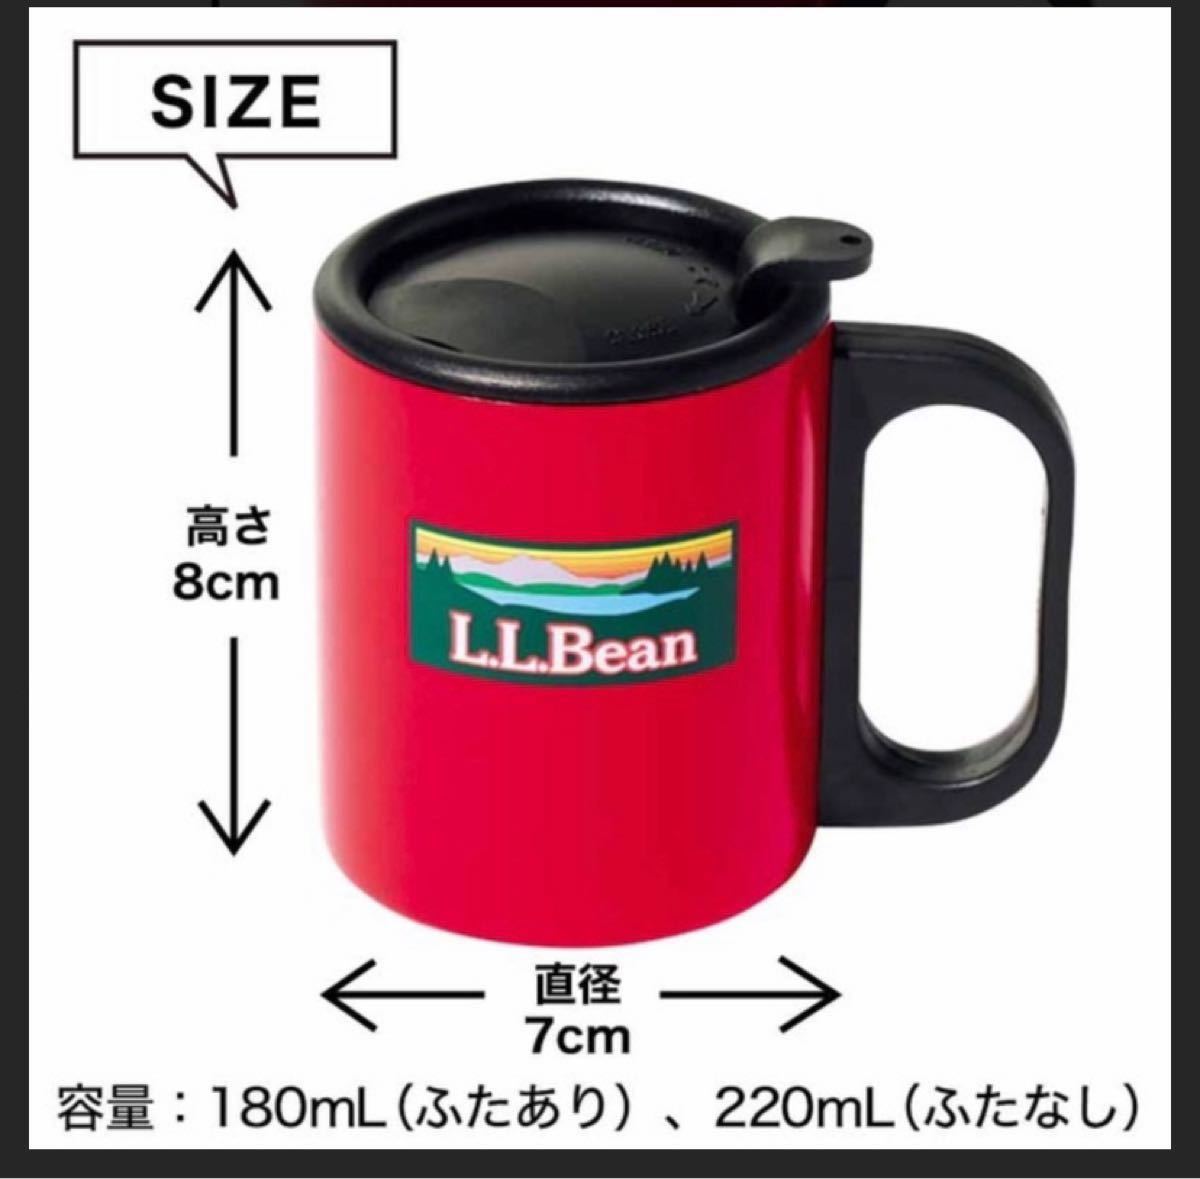 L.L.Bean ステンレス マグカップ 2個セット